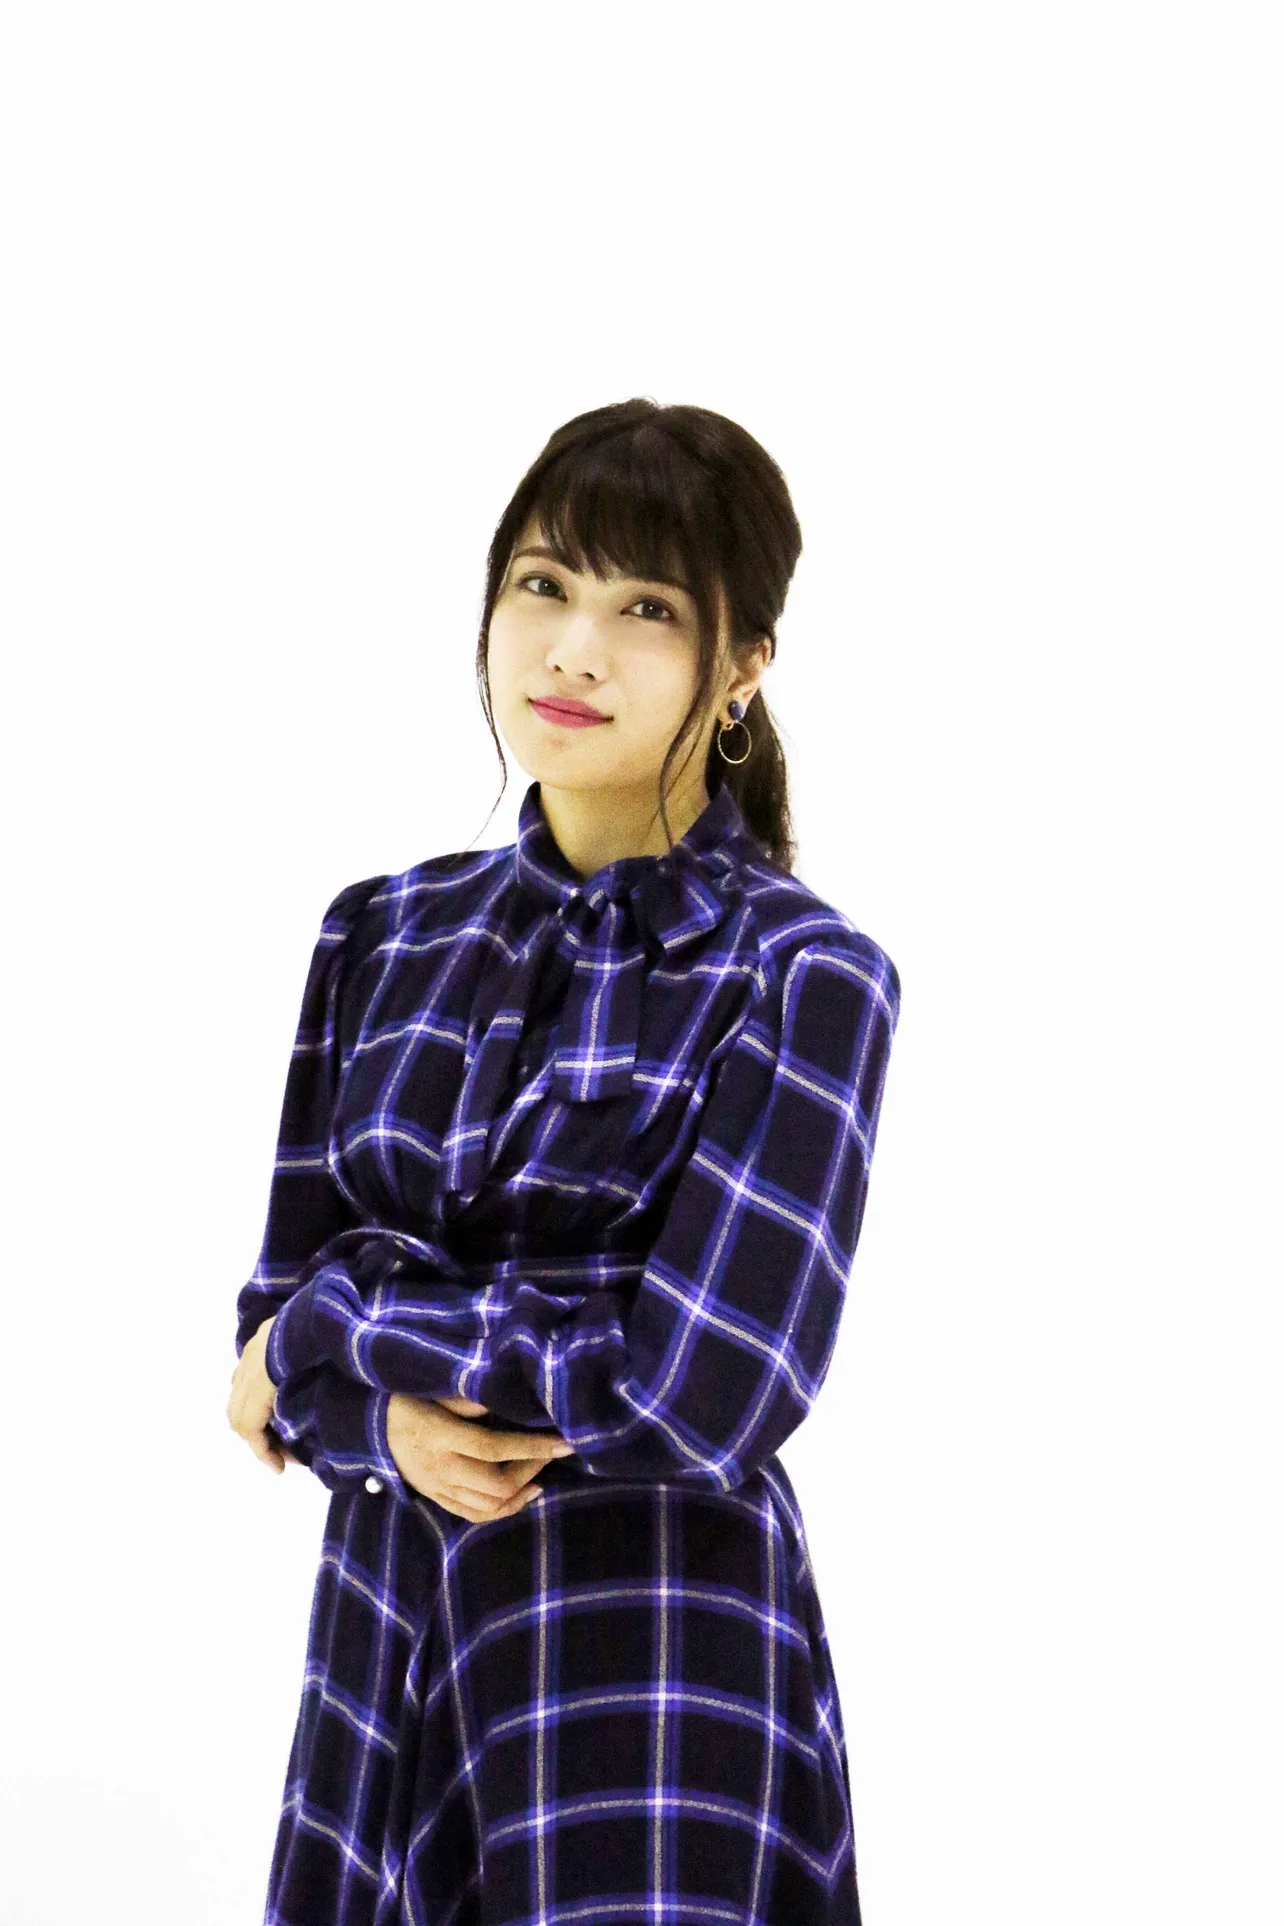 ドラマ「花にけだもの」(dTV、FODで同時配信)に大神カンナ役で出演するAKB48・入山杏奈にインタビュー